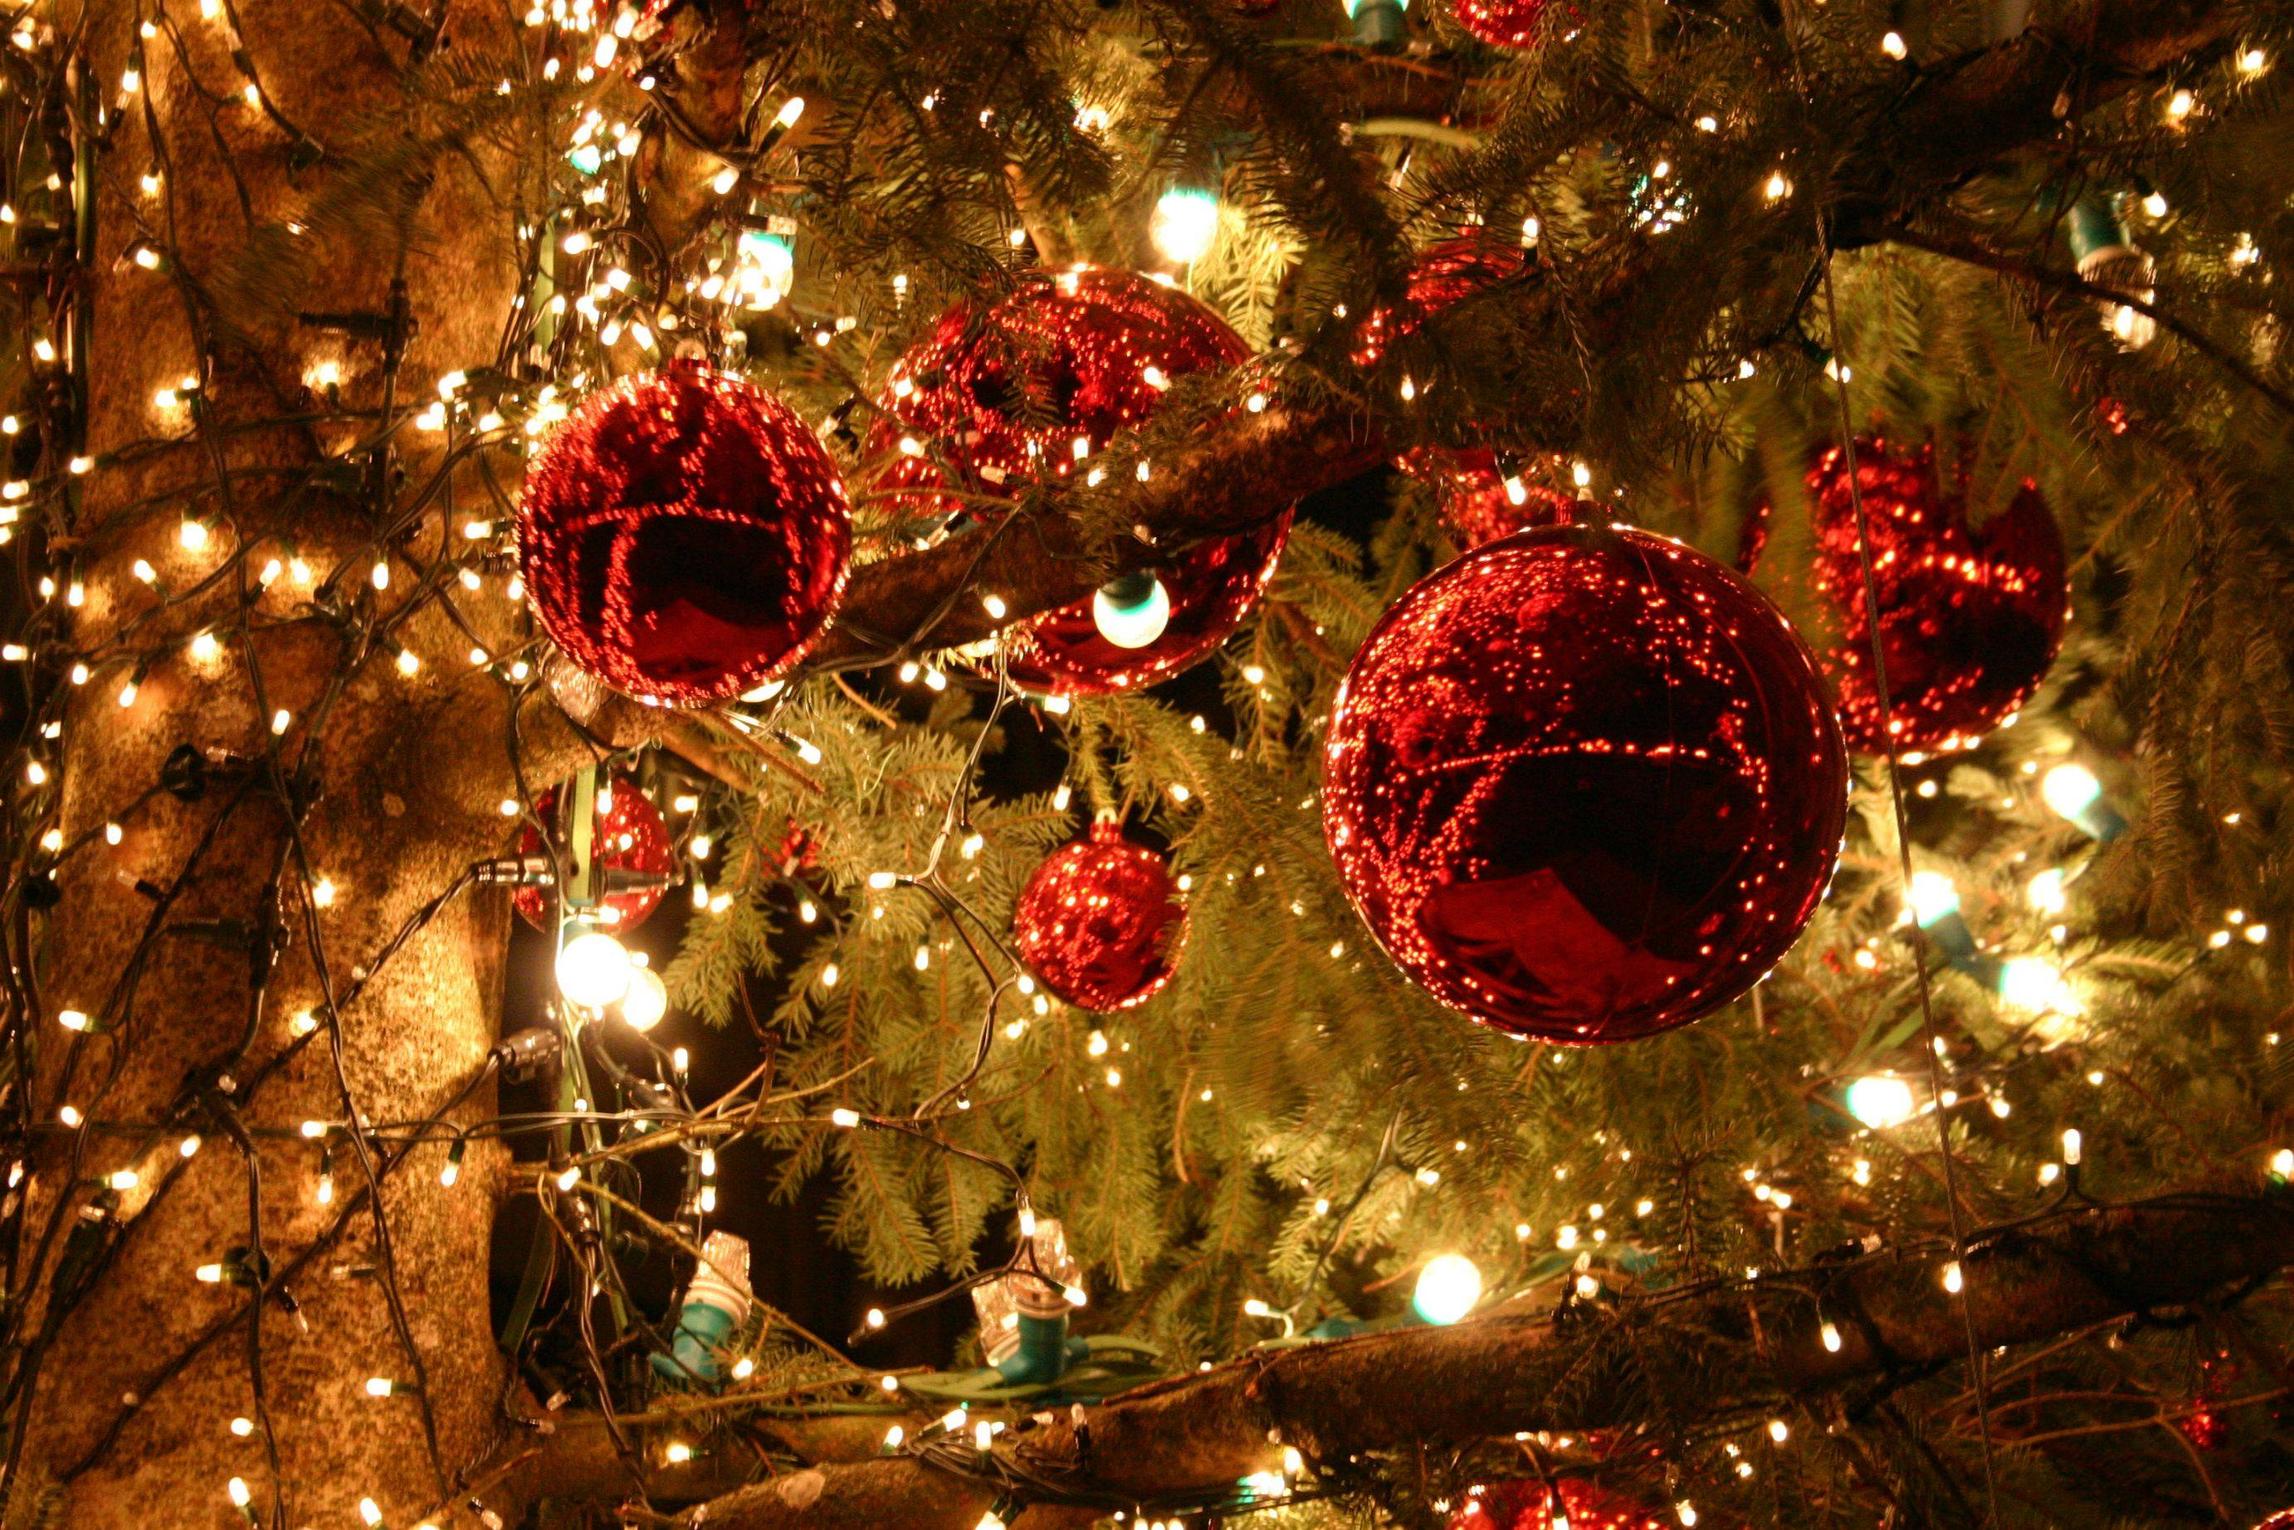 sfondi di natale ad alta risoluzione,ornamento di natale,decorazione natalizia,natale,albero di natale,albero